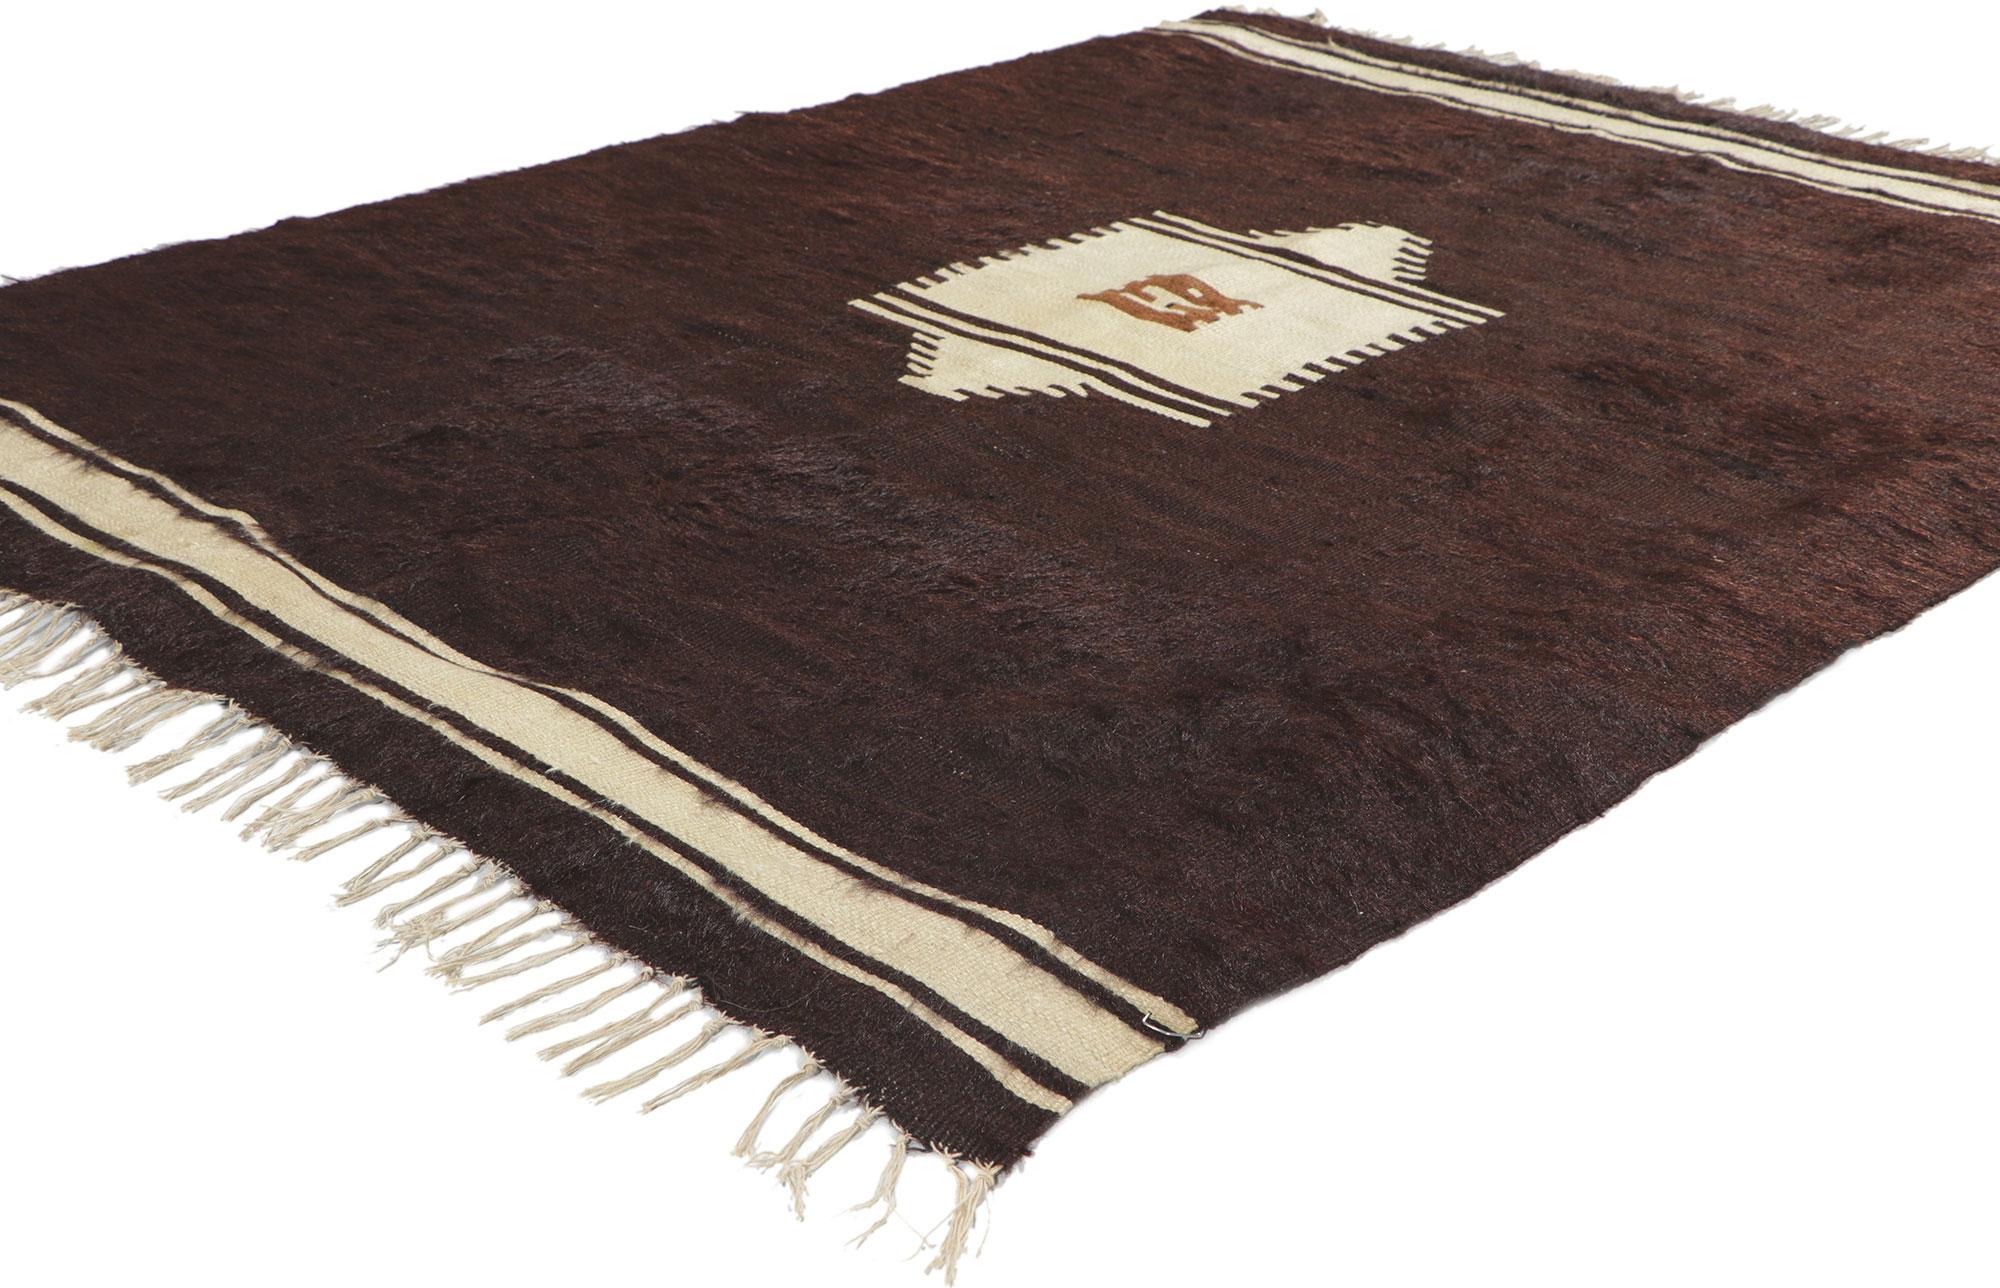 53830 Vintage Türkisch Angora Wolle Kilim Blanket Teppich, 03'11 x 05'01. Dieser handgewebte türkische Angora-Kelim mit seinem zotteligen Flor, seinen unglaublichen Details und seiner Textur ist eine fesselnde Vision gewebter Schönheit. Das